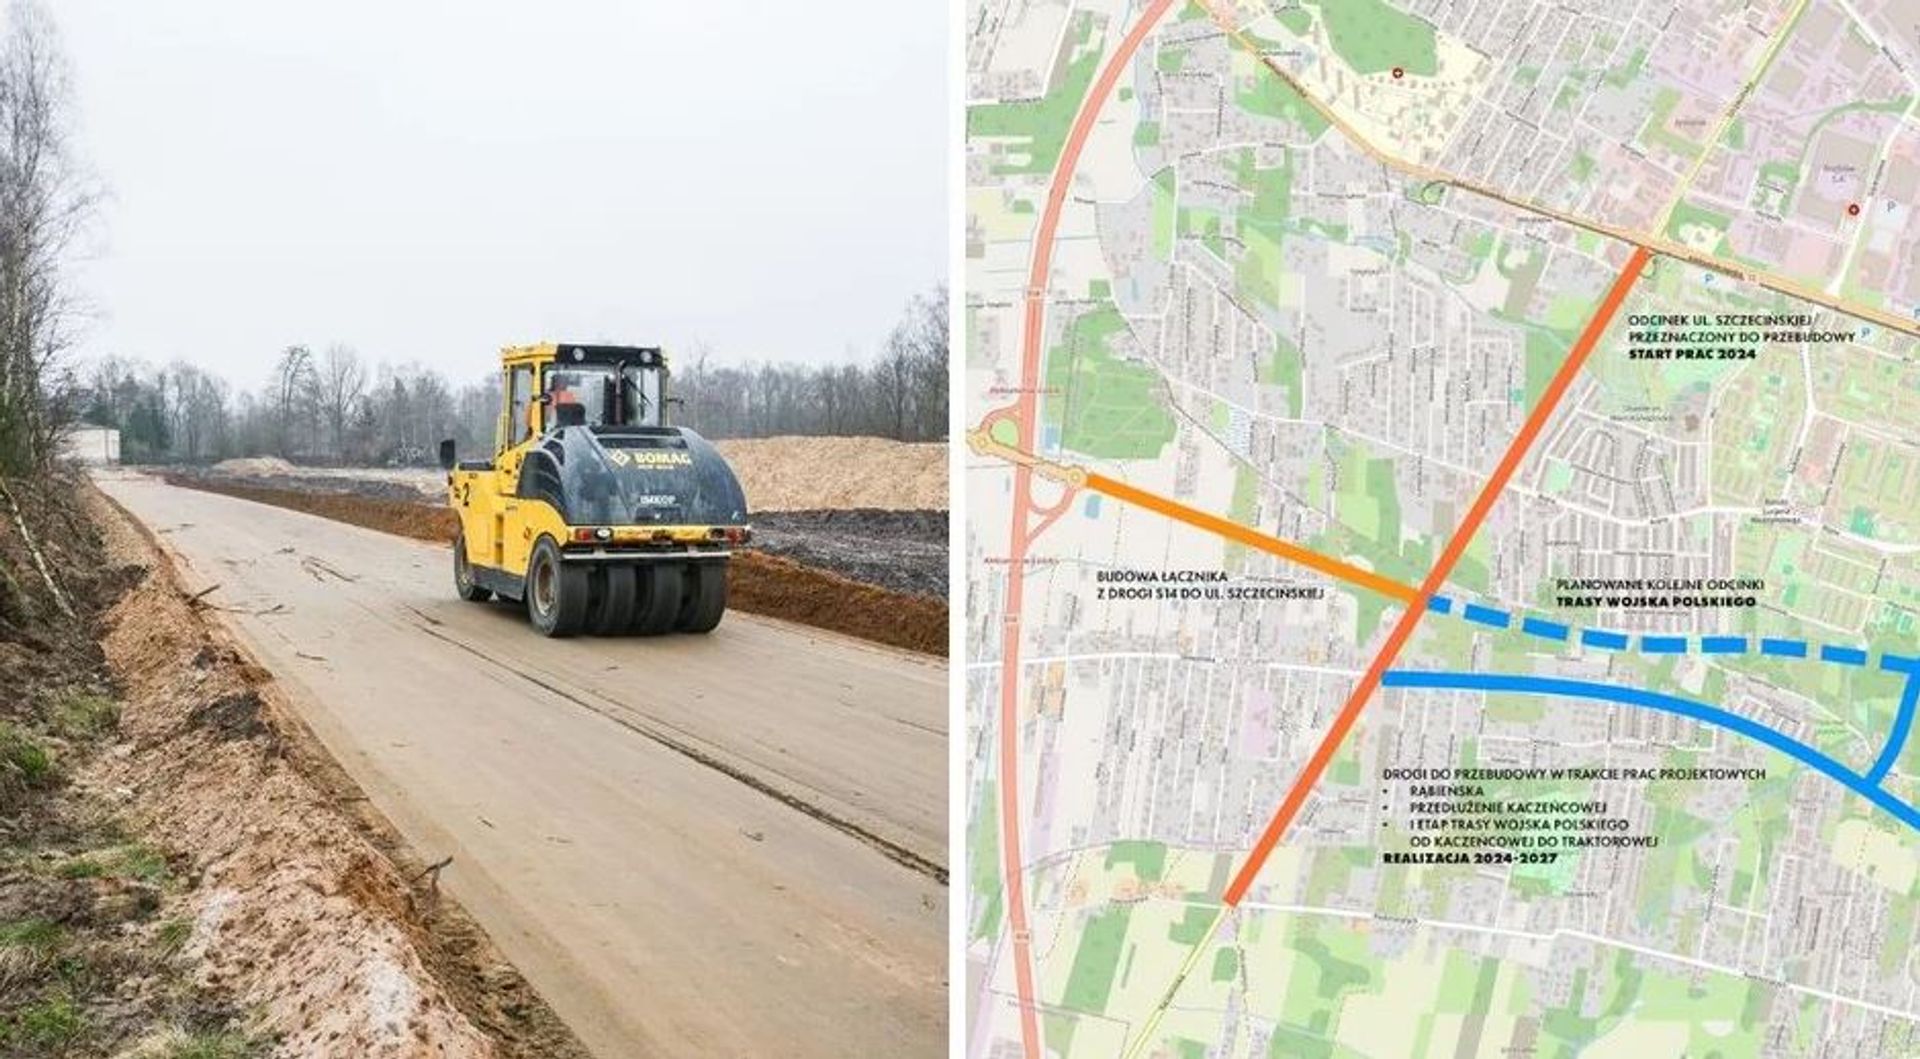 Droga ekspresowa S14 coraz bliżej Łodzi. Jak przebiega budowa łącznika? 